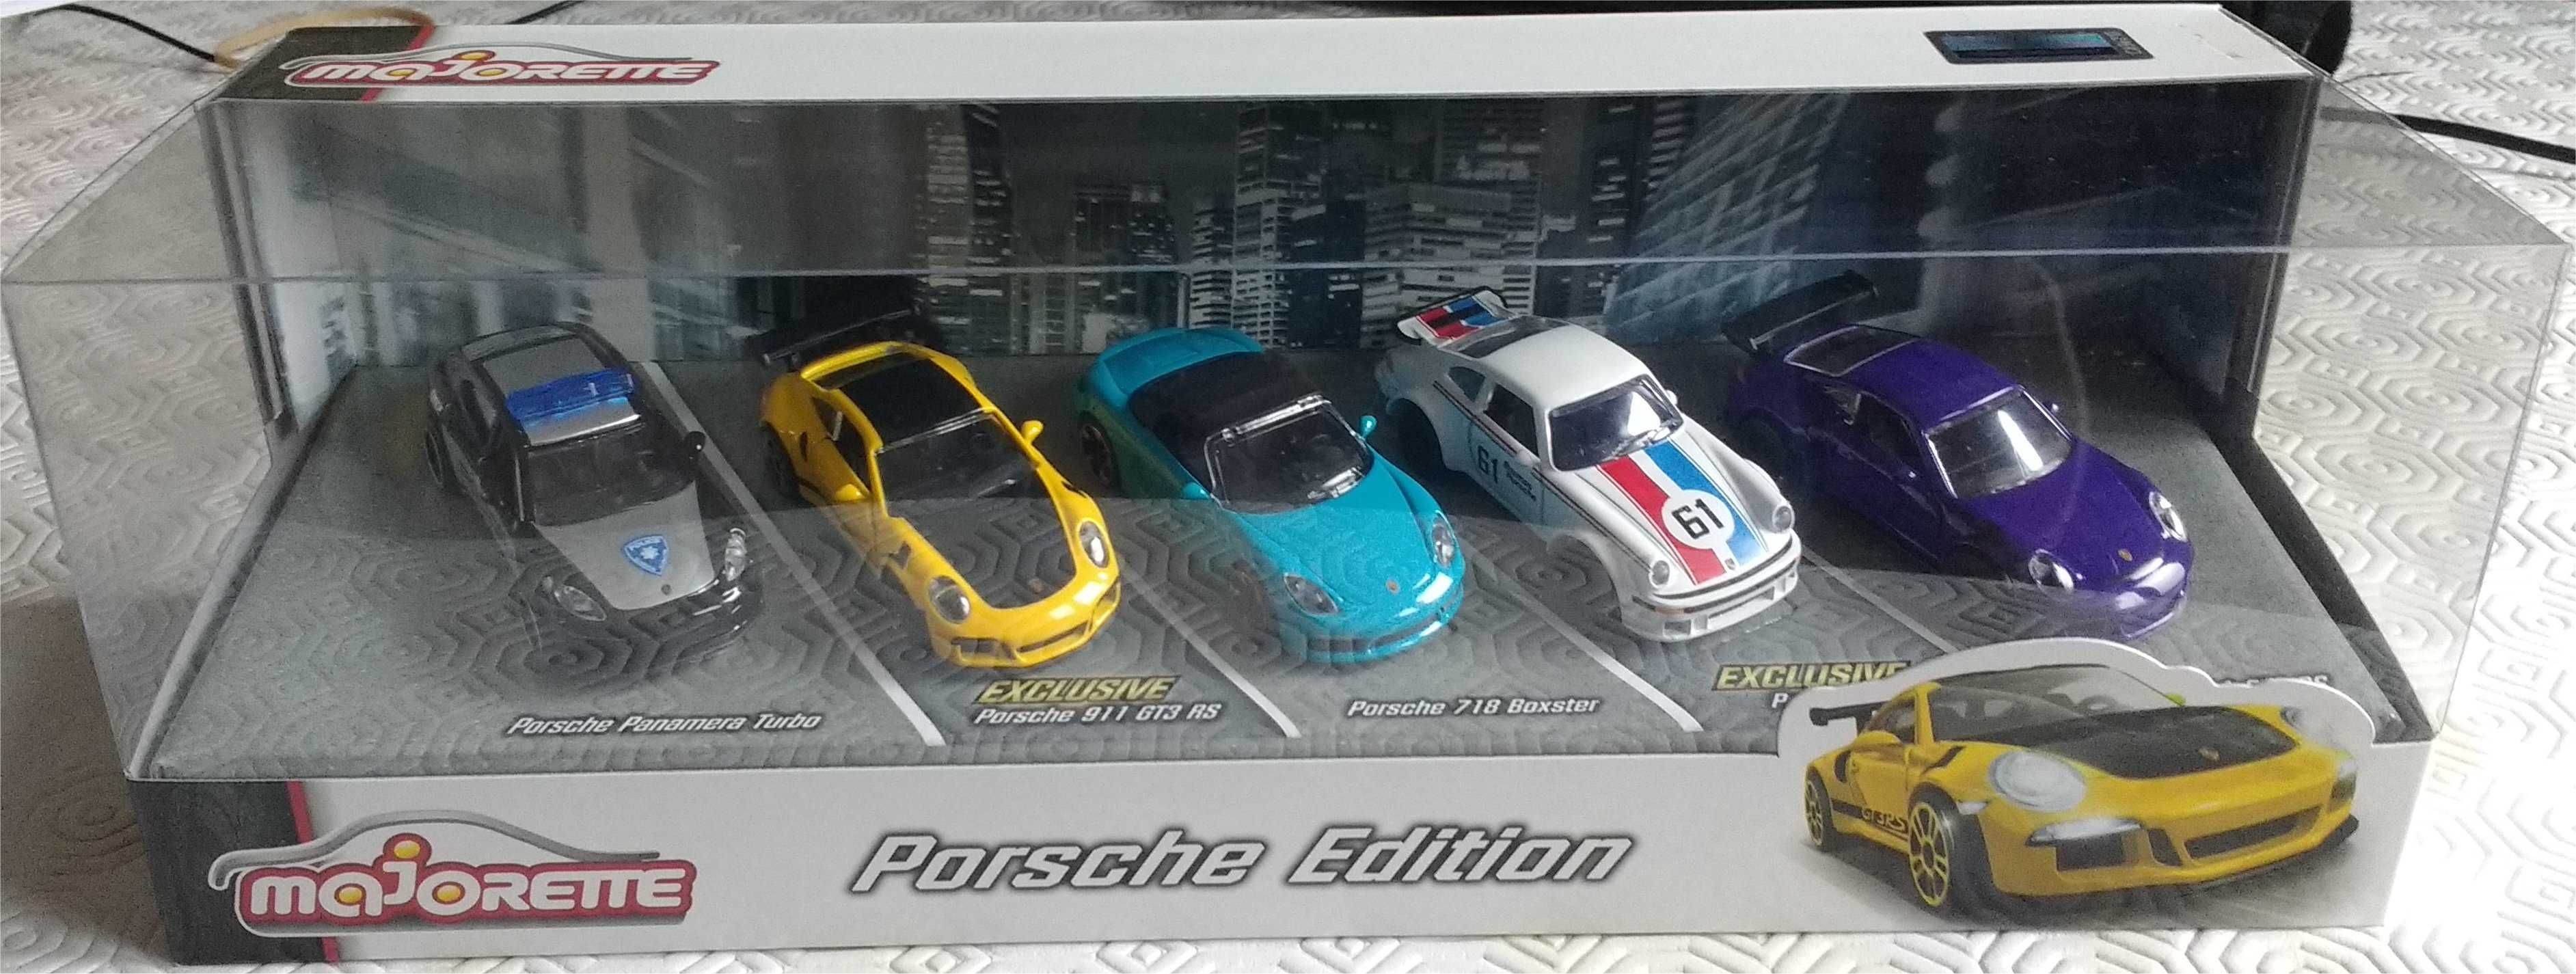 Majorette - Porsche Edition 5-Pack